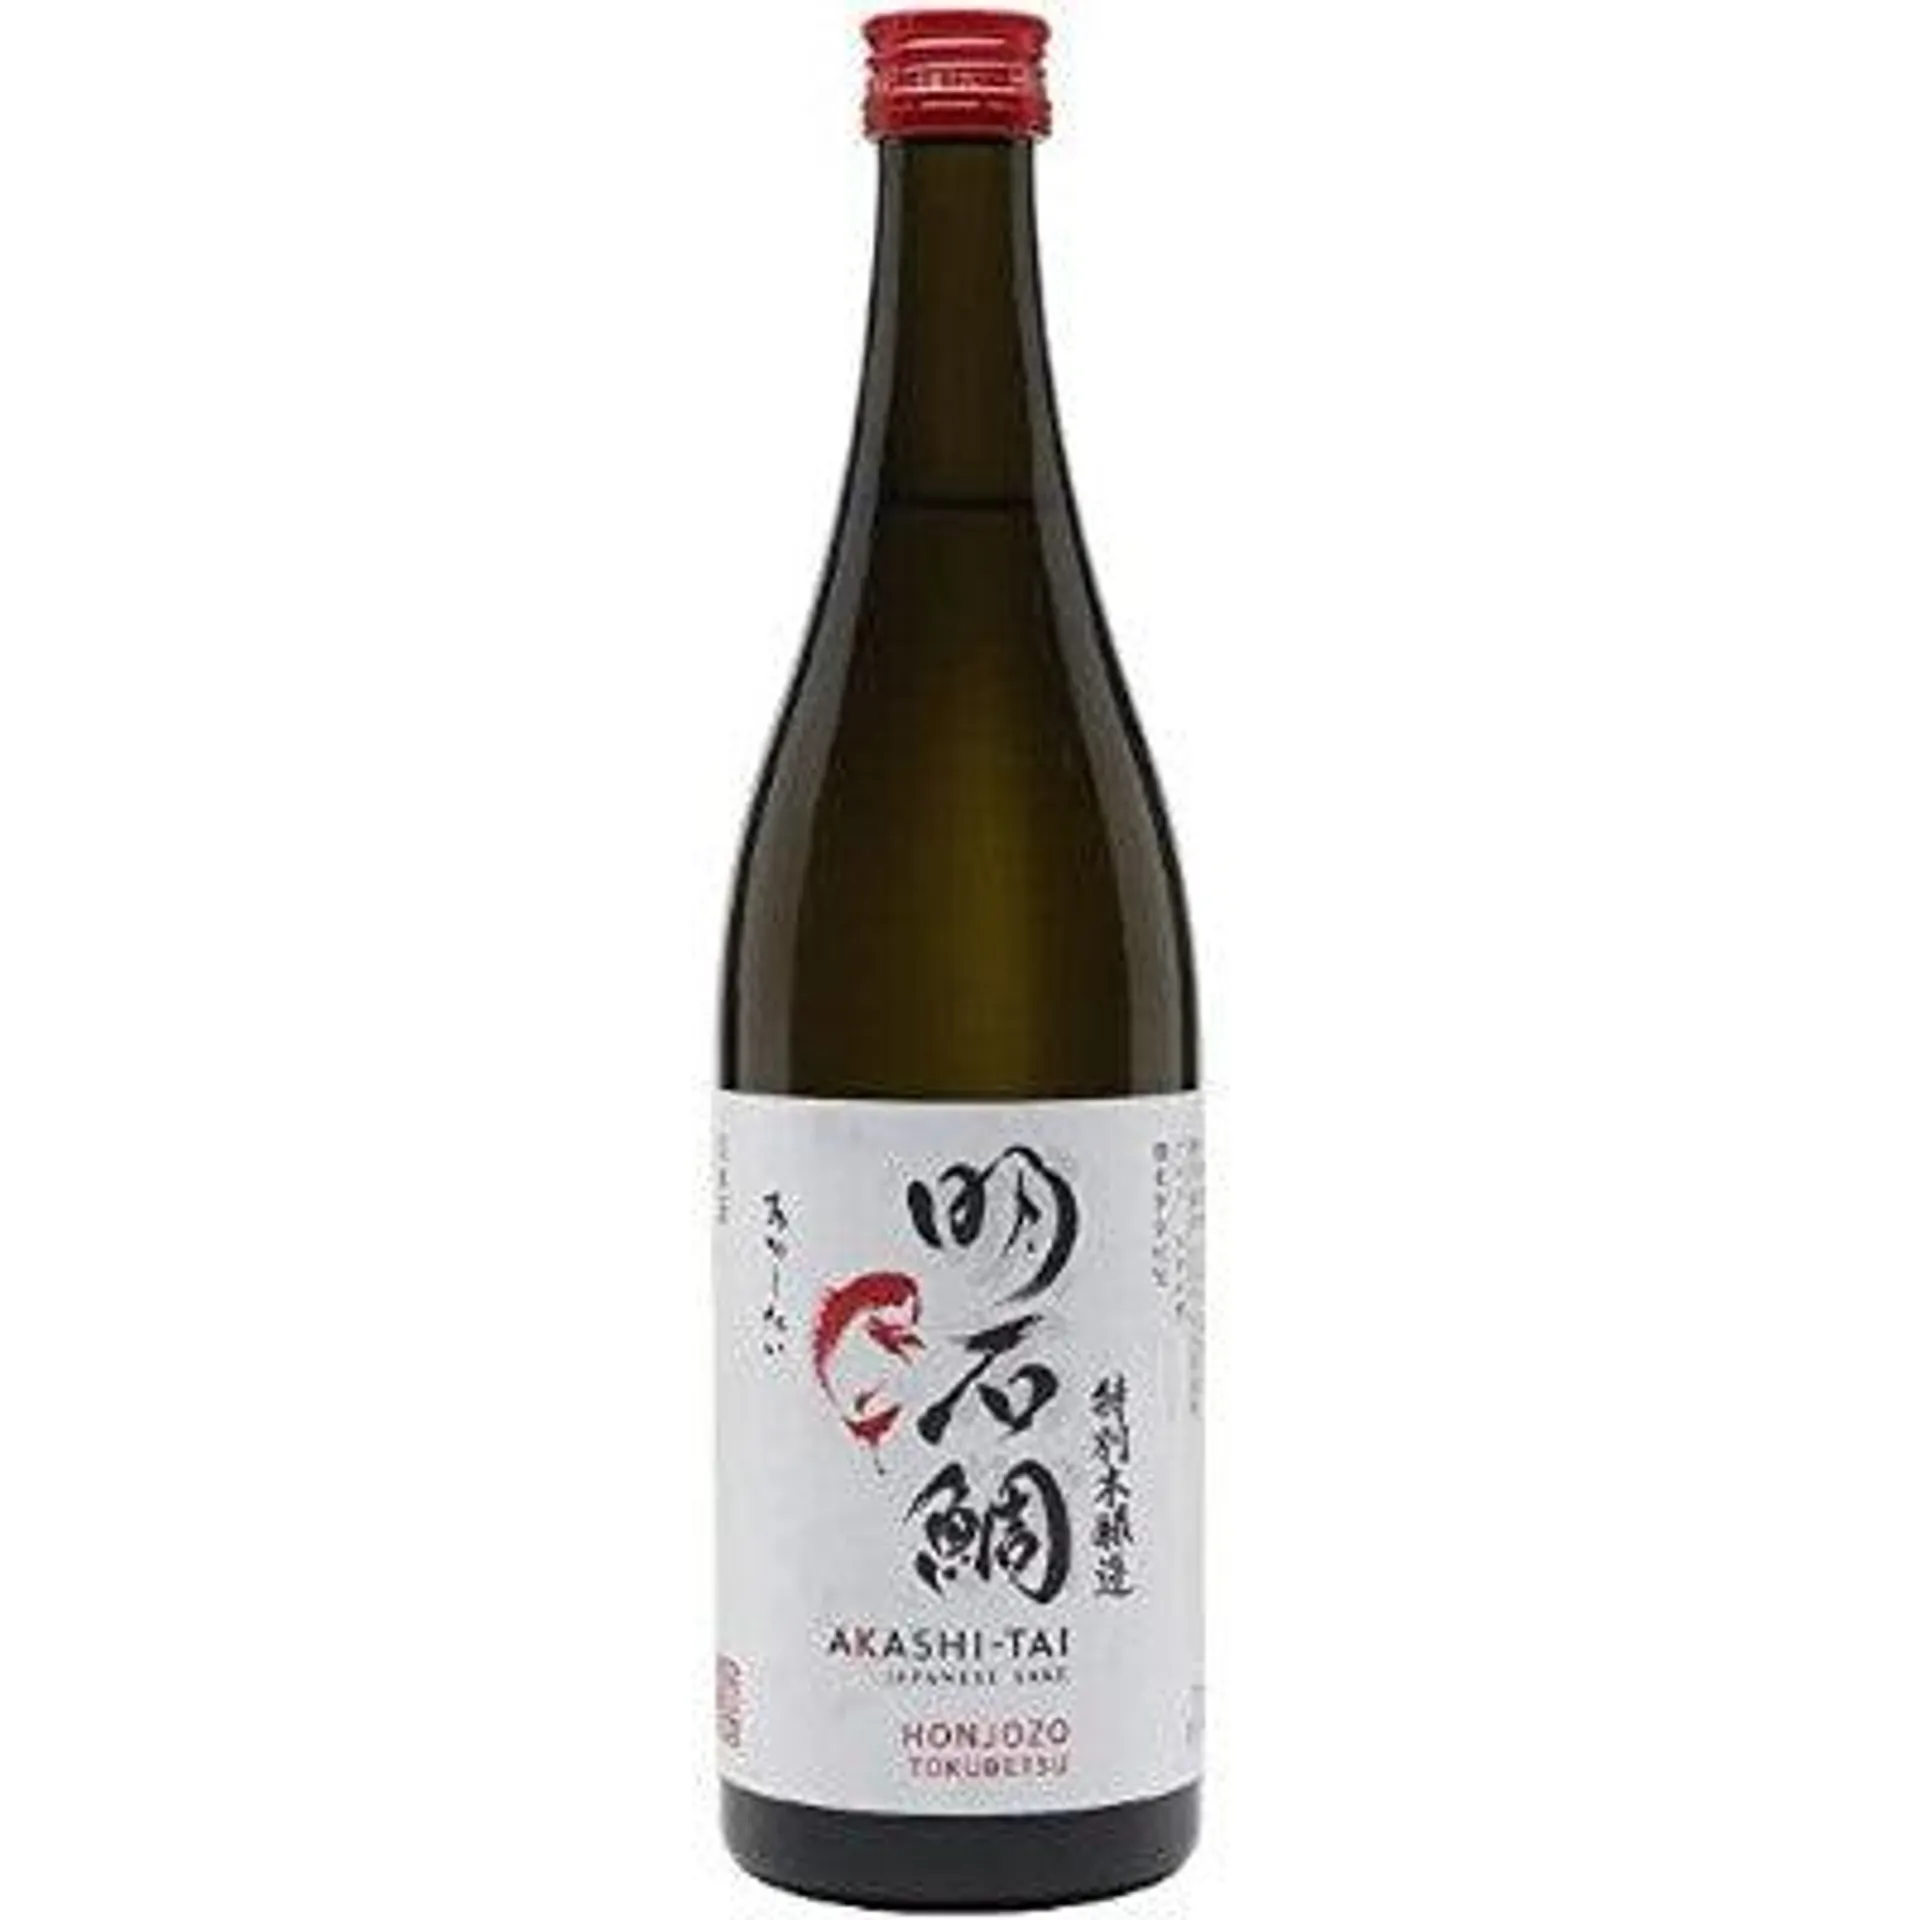 Akashi-Tai- Honjozo Tokubetsu Sake 15% ABV